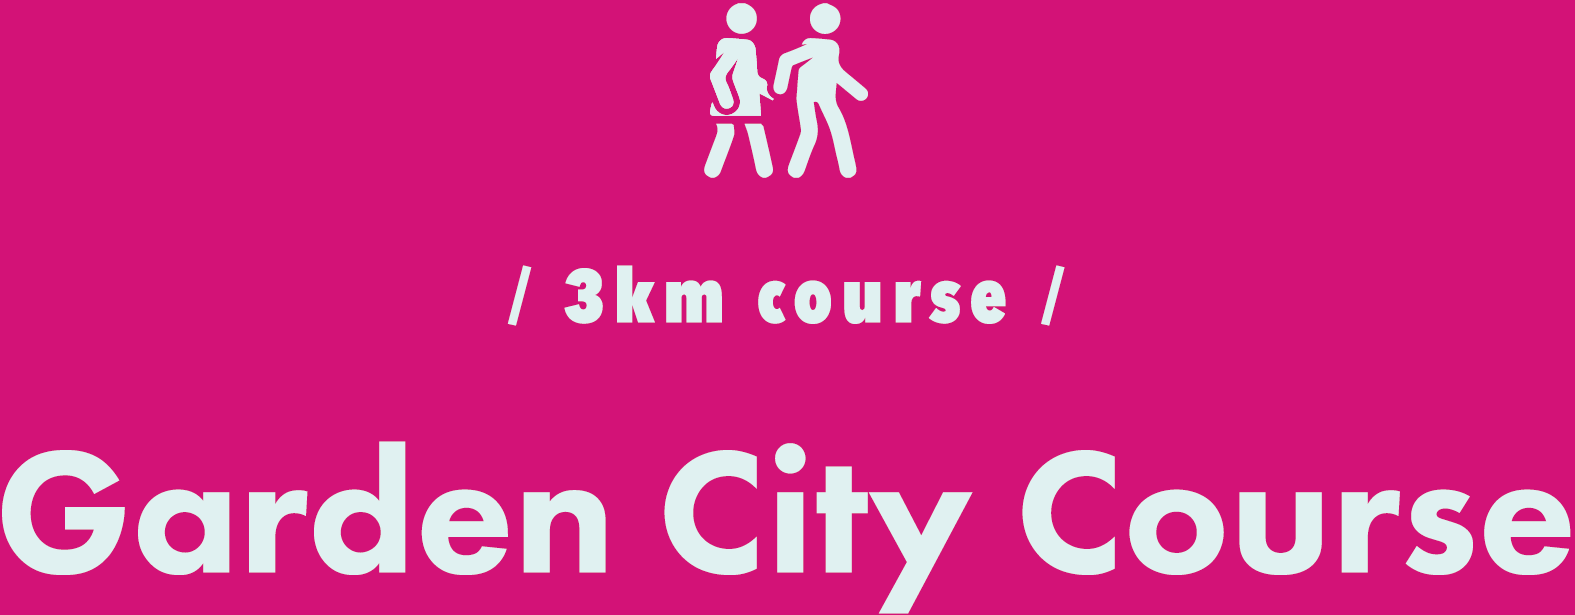 / 3km course / Garden City Course